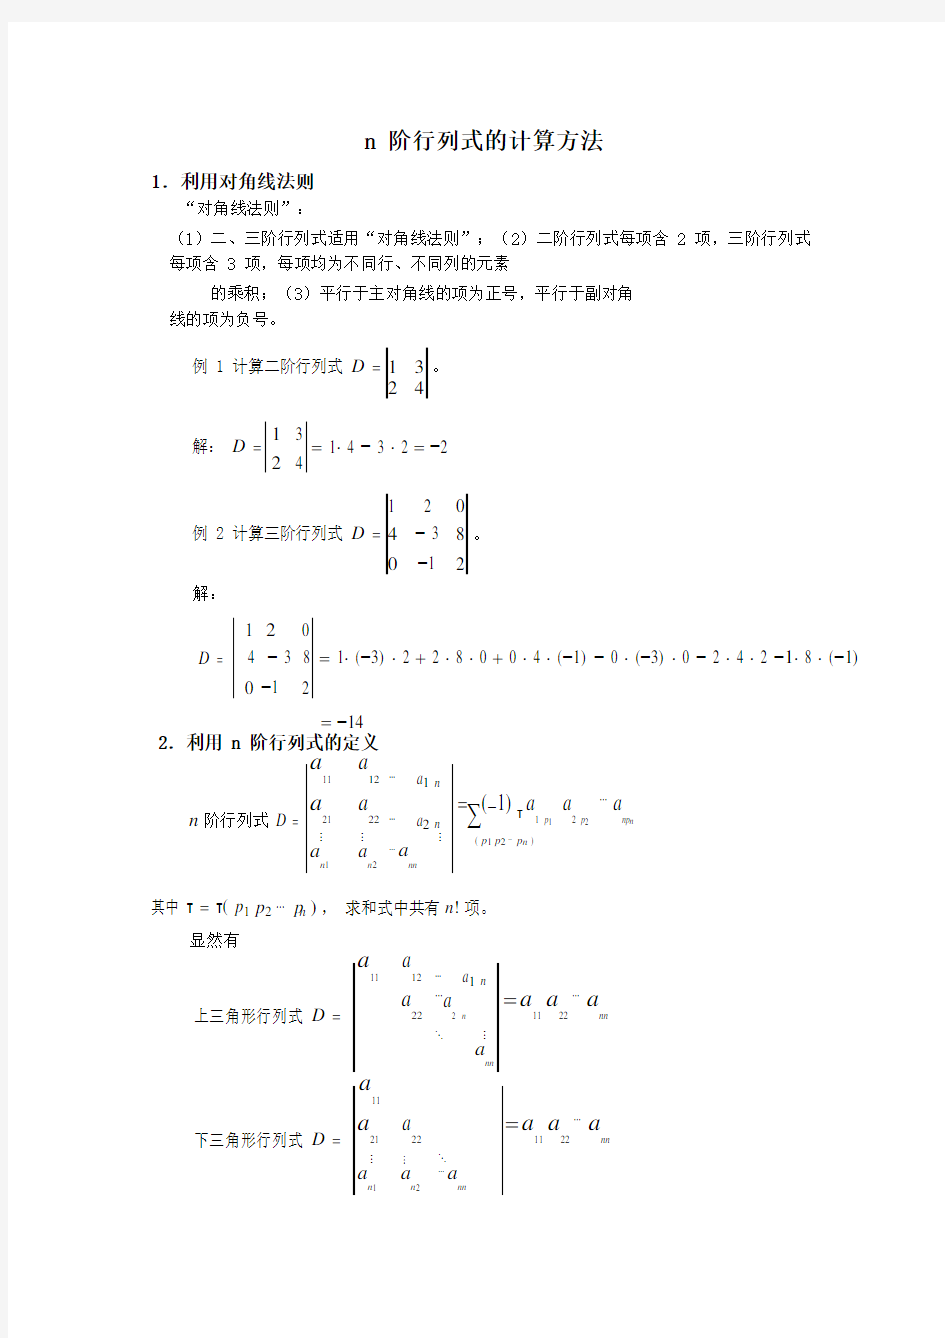 n阶行列式的计算方法